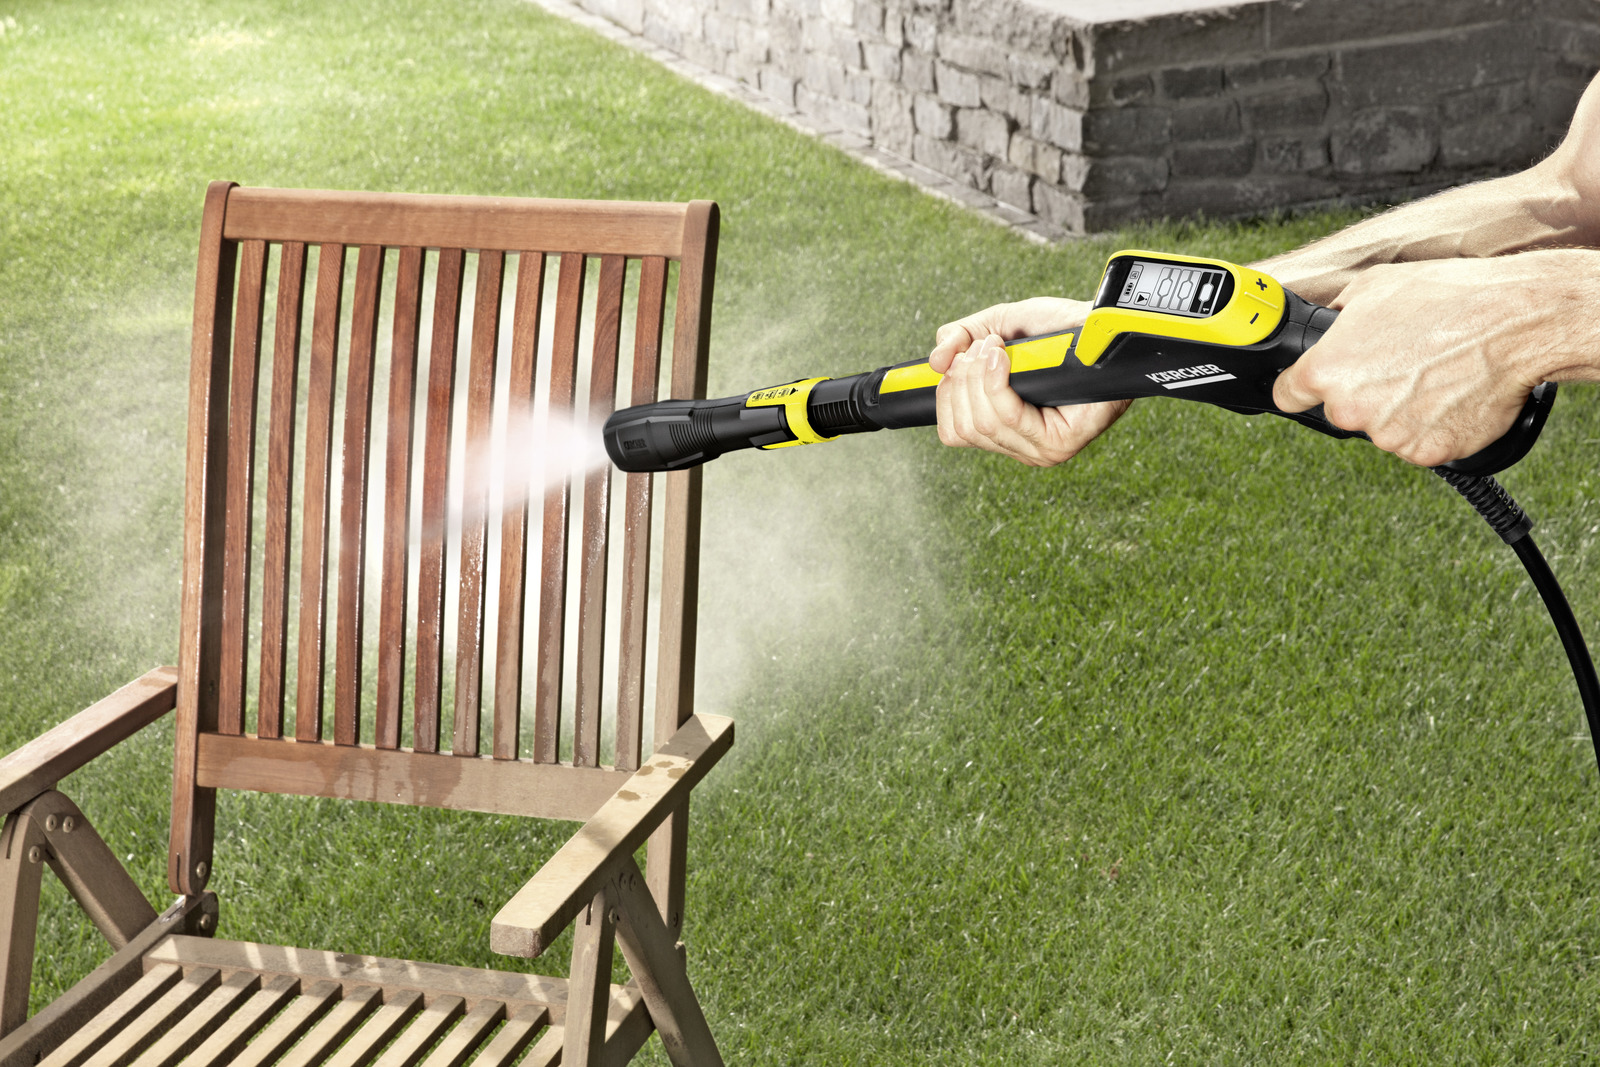 Myjka wysokociśnieniowa Karcher K 7 Smart Control - zastosowanie w ogrodzie